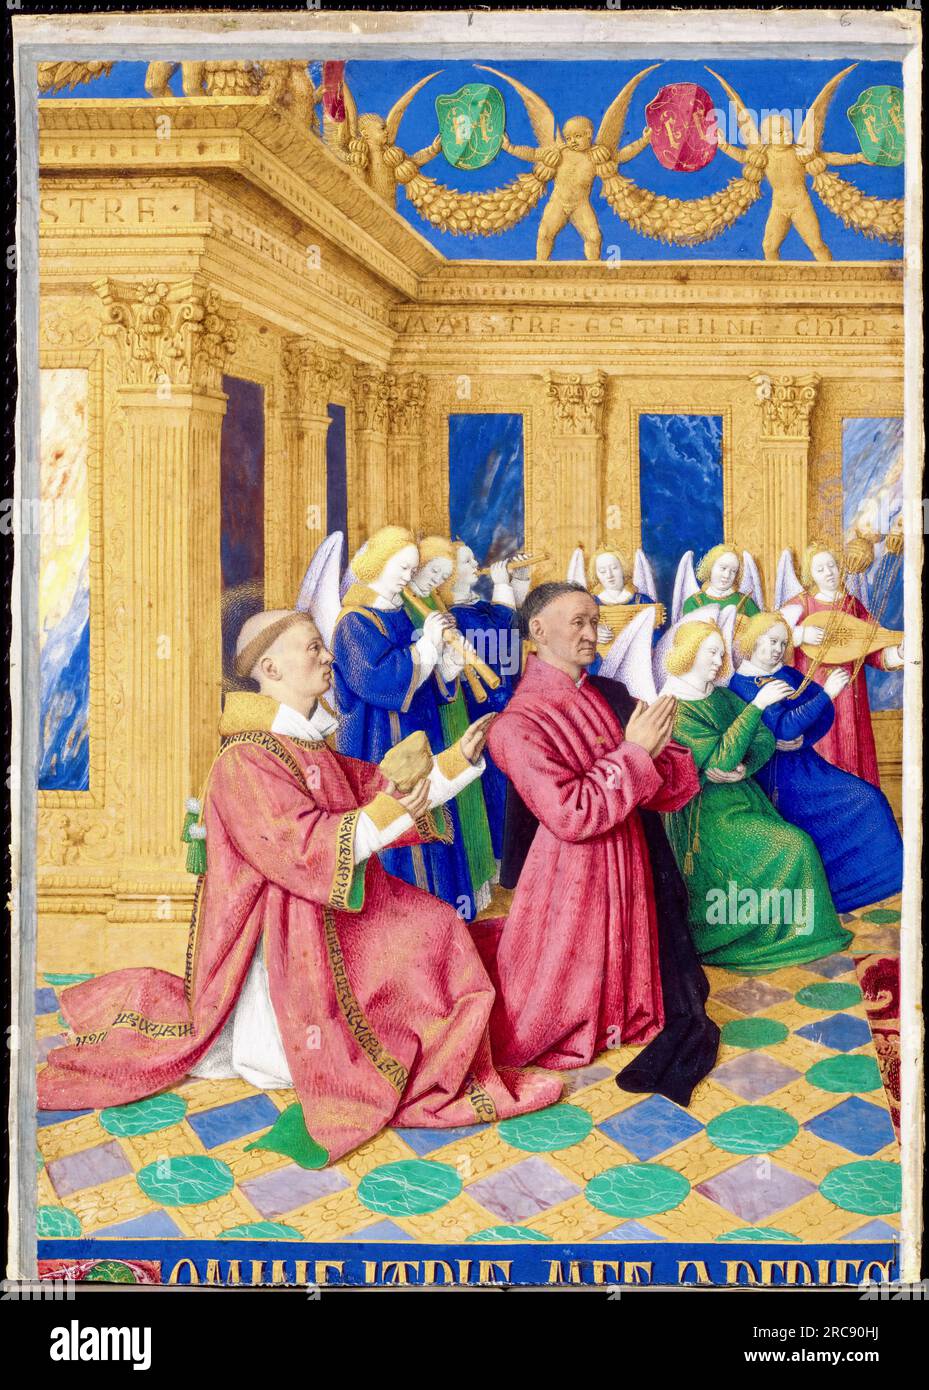 Etienne Chevalier und Saint Etienne, sein Schutzpatron, Aus den Stunden von Etienne Chevalier, beleuchtetes Manuskript auf Pergament von Jean Fouquet, 1452-1460 Stockfoto